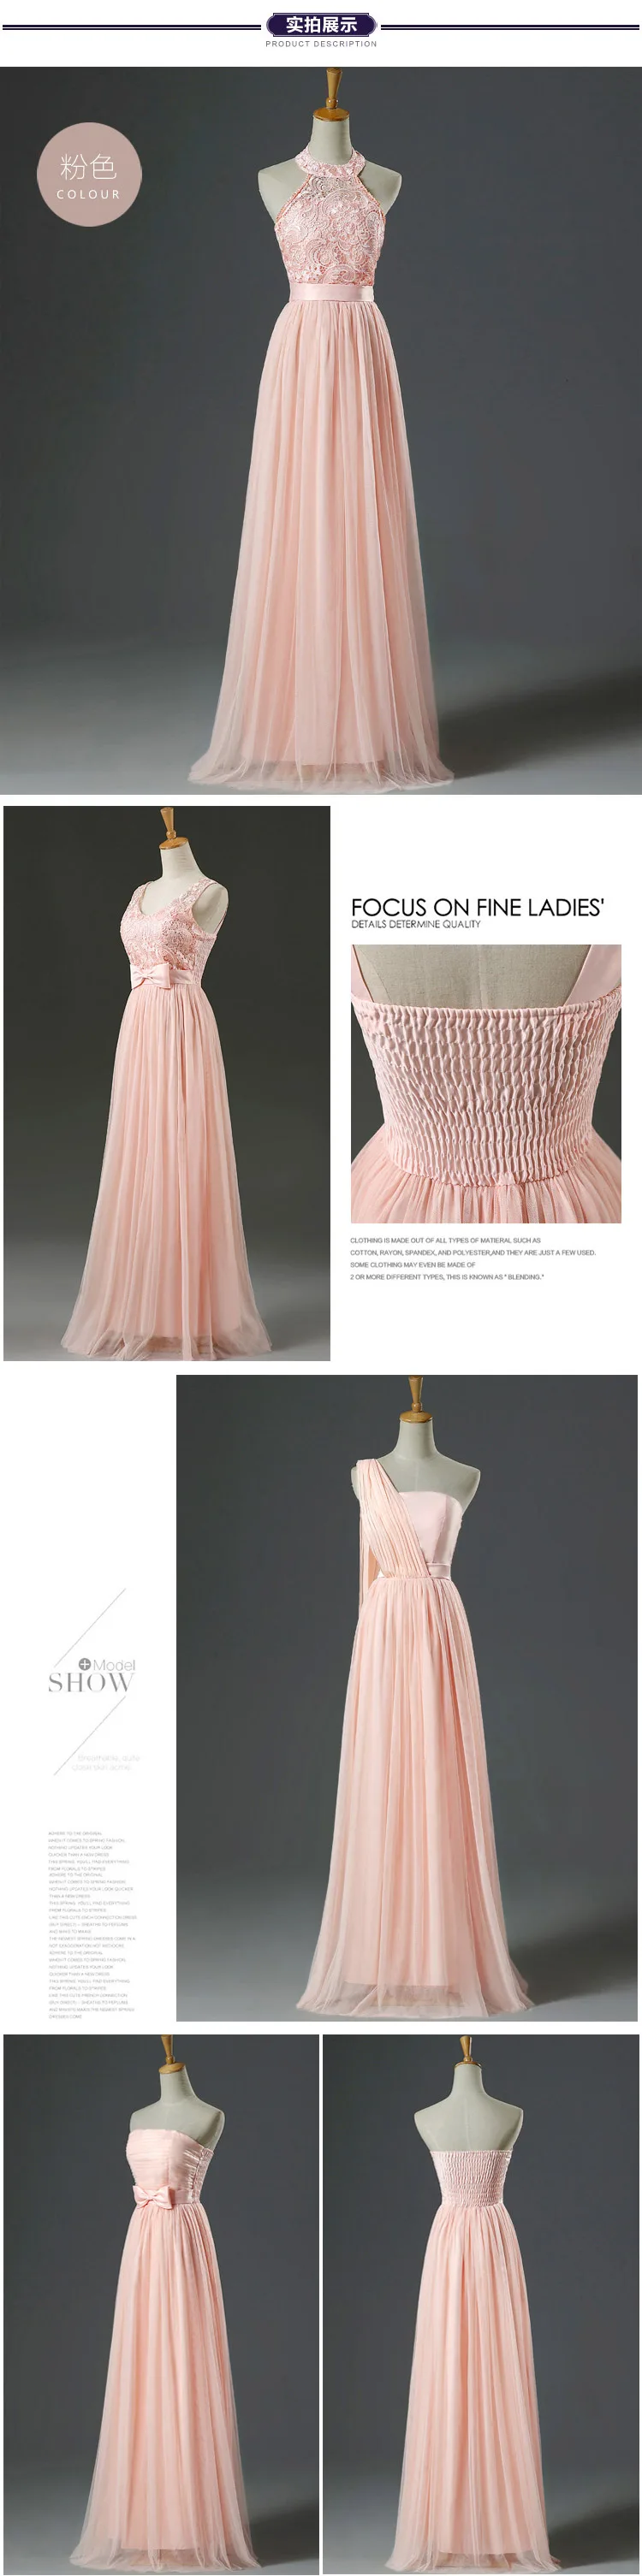 renda rosa vestidos de dama de honra lc250m